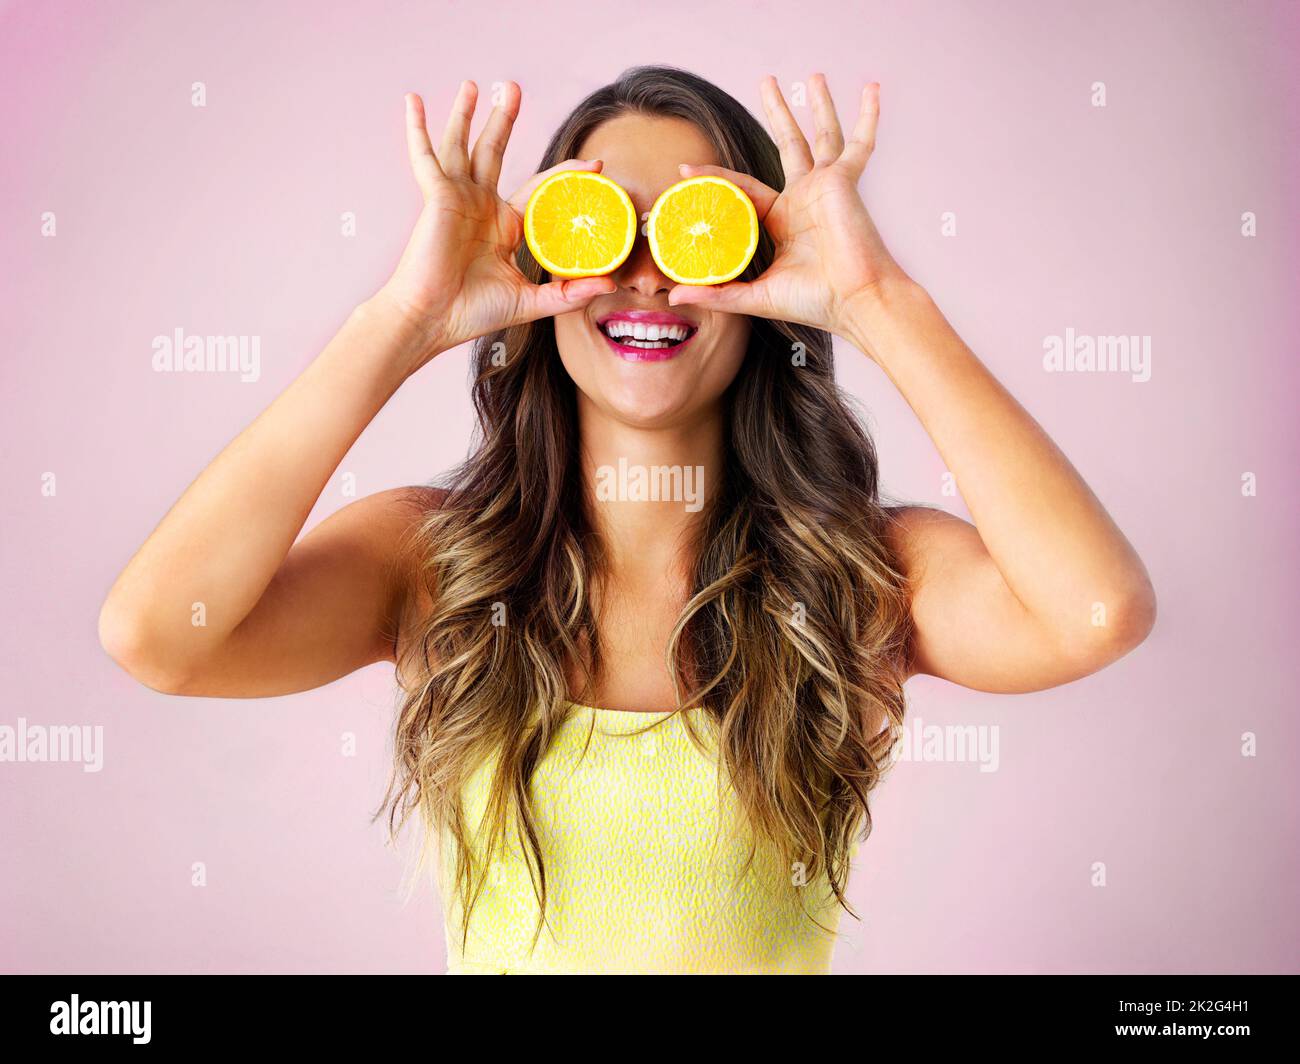 Guardate il lato luminoso. Studio girato di una giovane donna che tiene due metà di un arancione davanti ai suoi occhi. Foto Stock